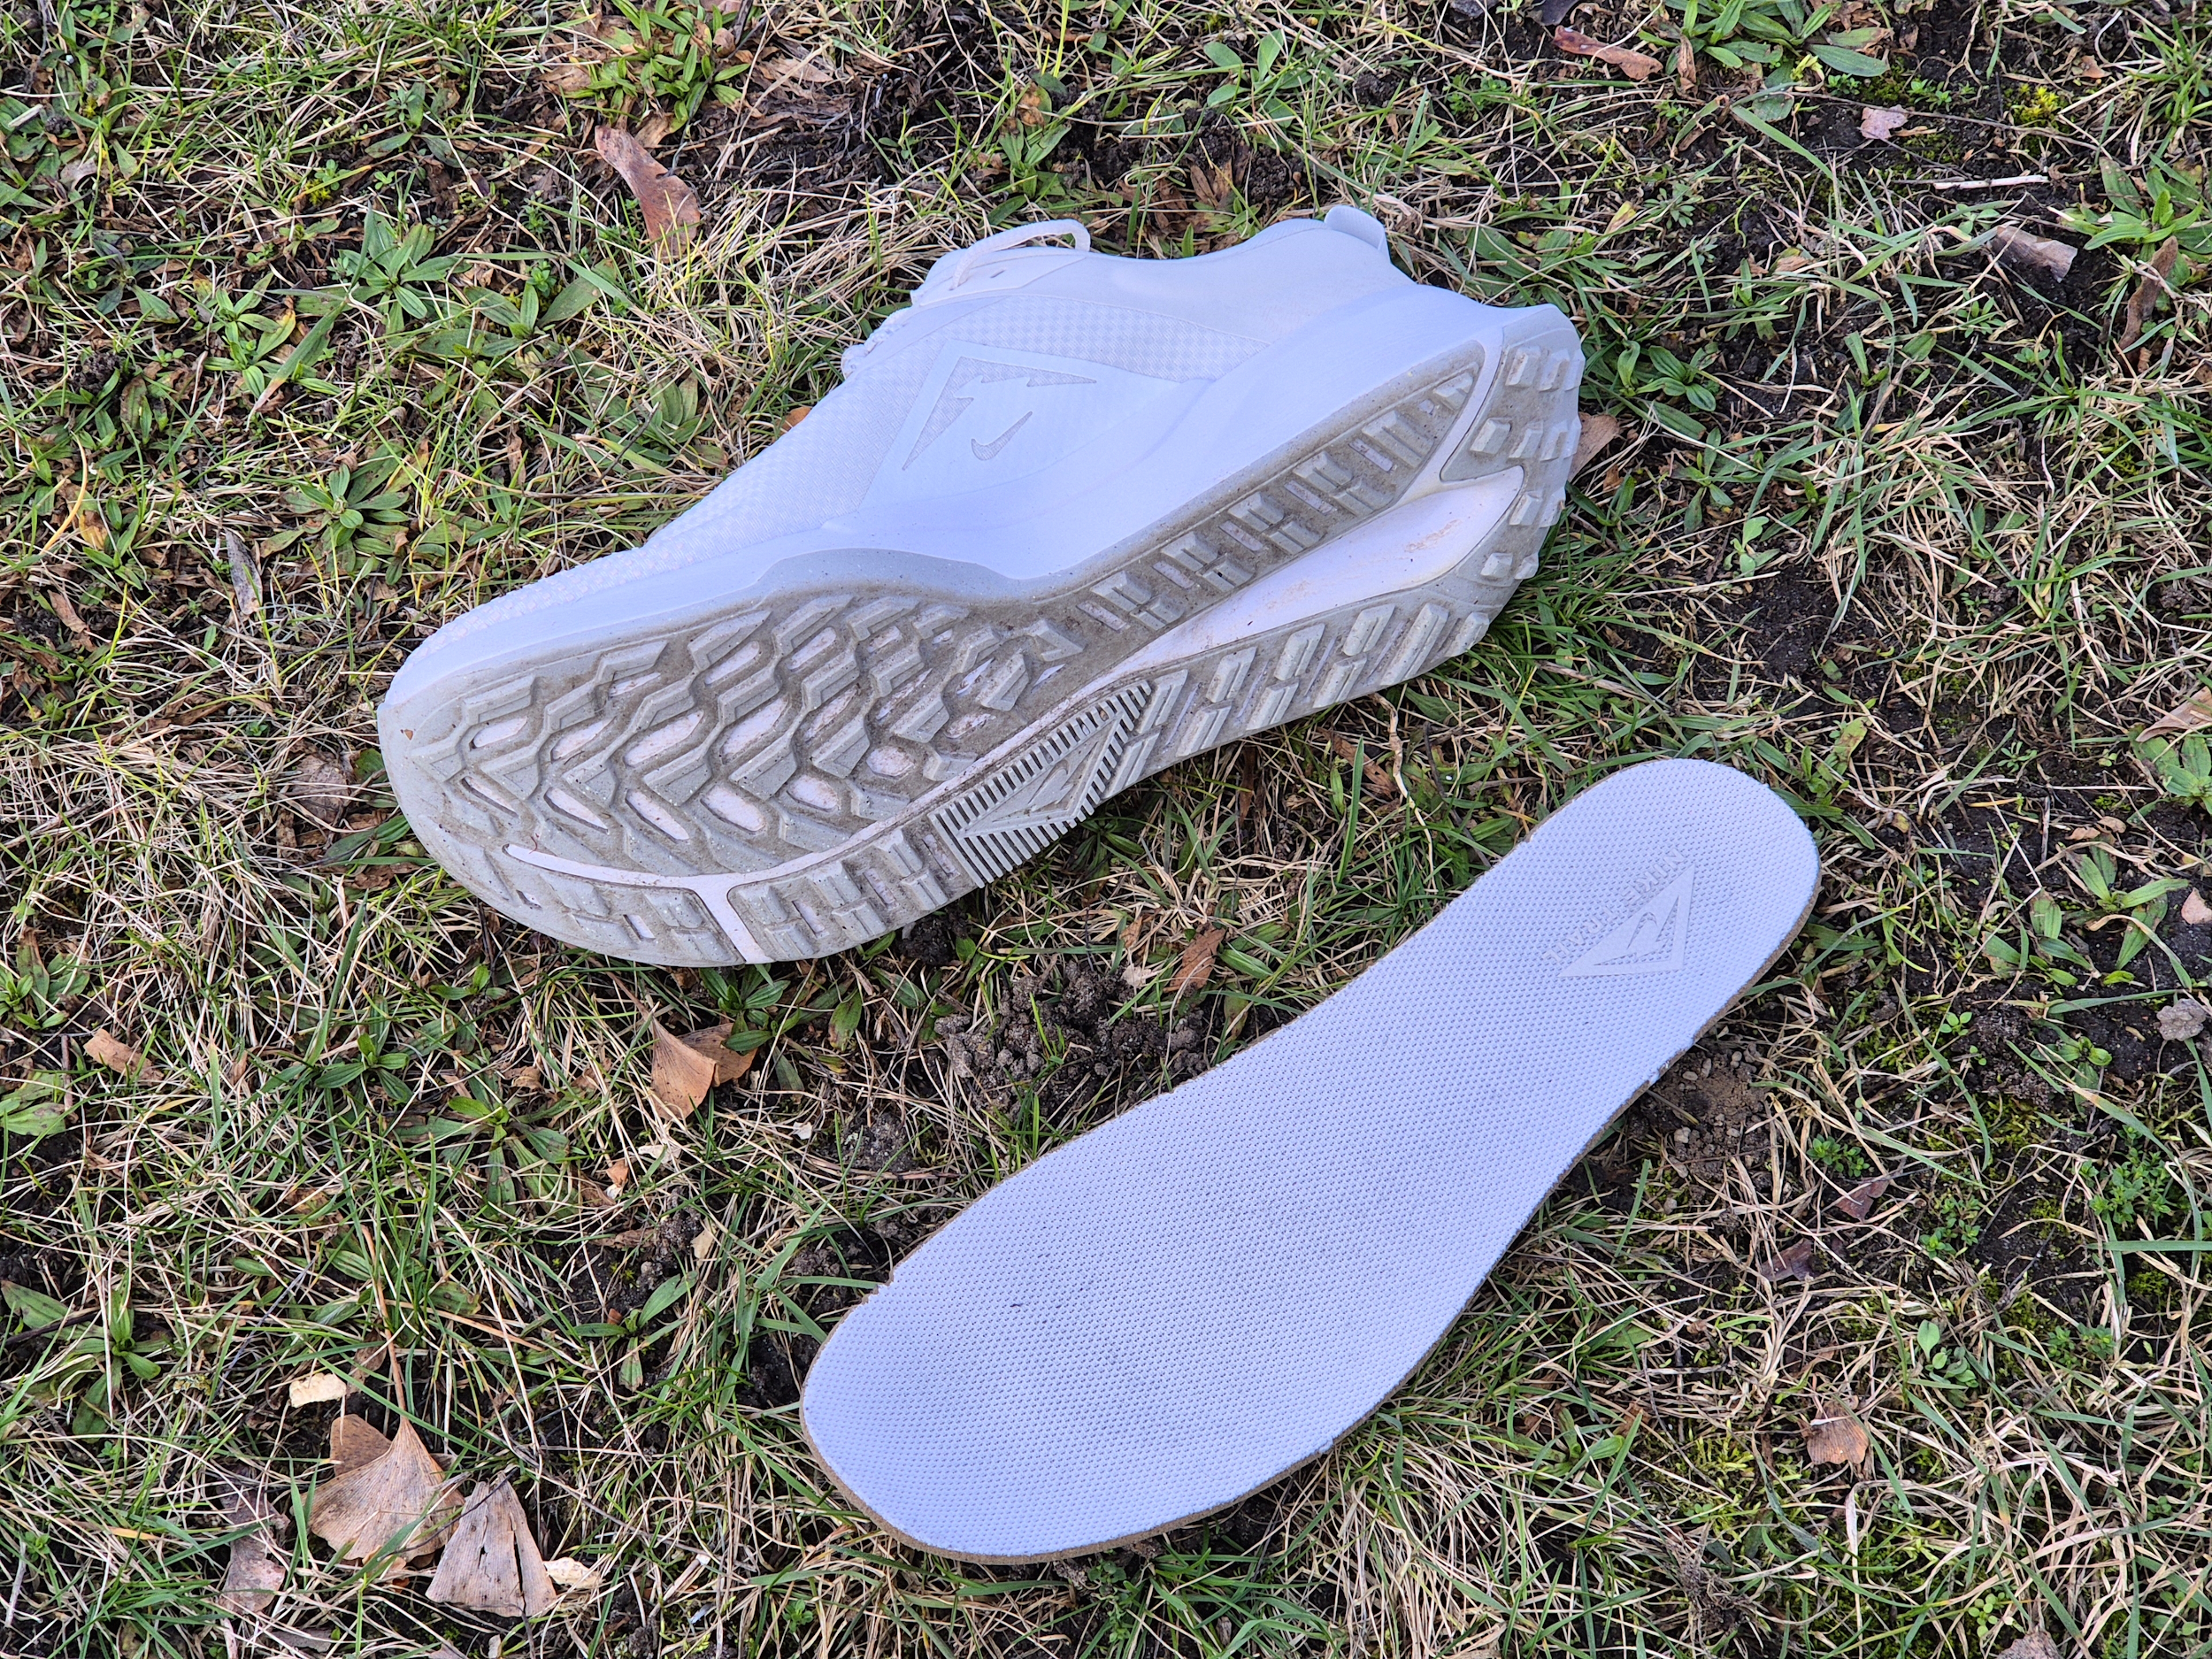 Traktions-Außensohle und waschbare Innensohle der Nike Juniper Trail 2 GTX Schuhe